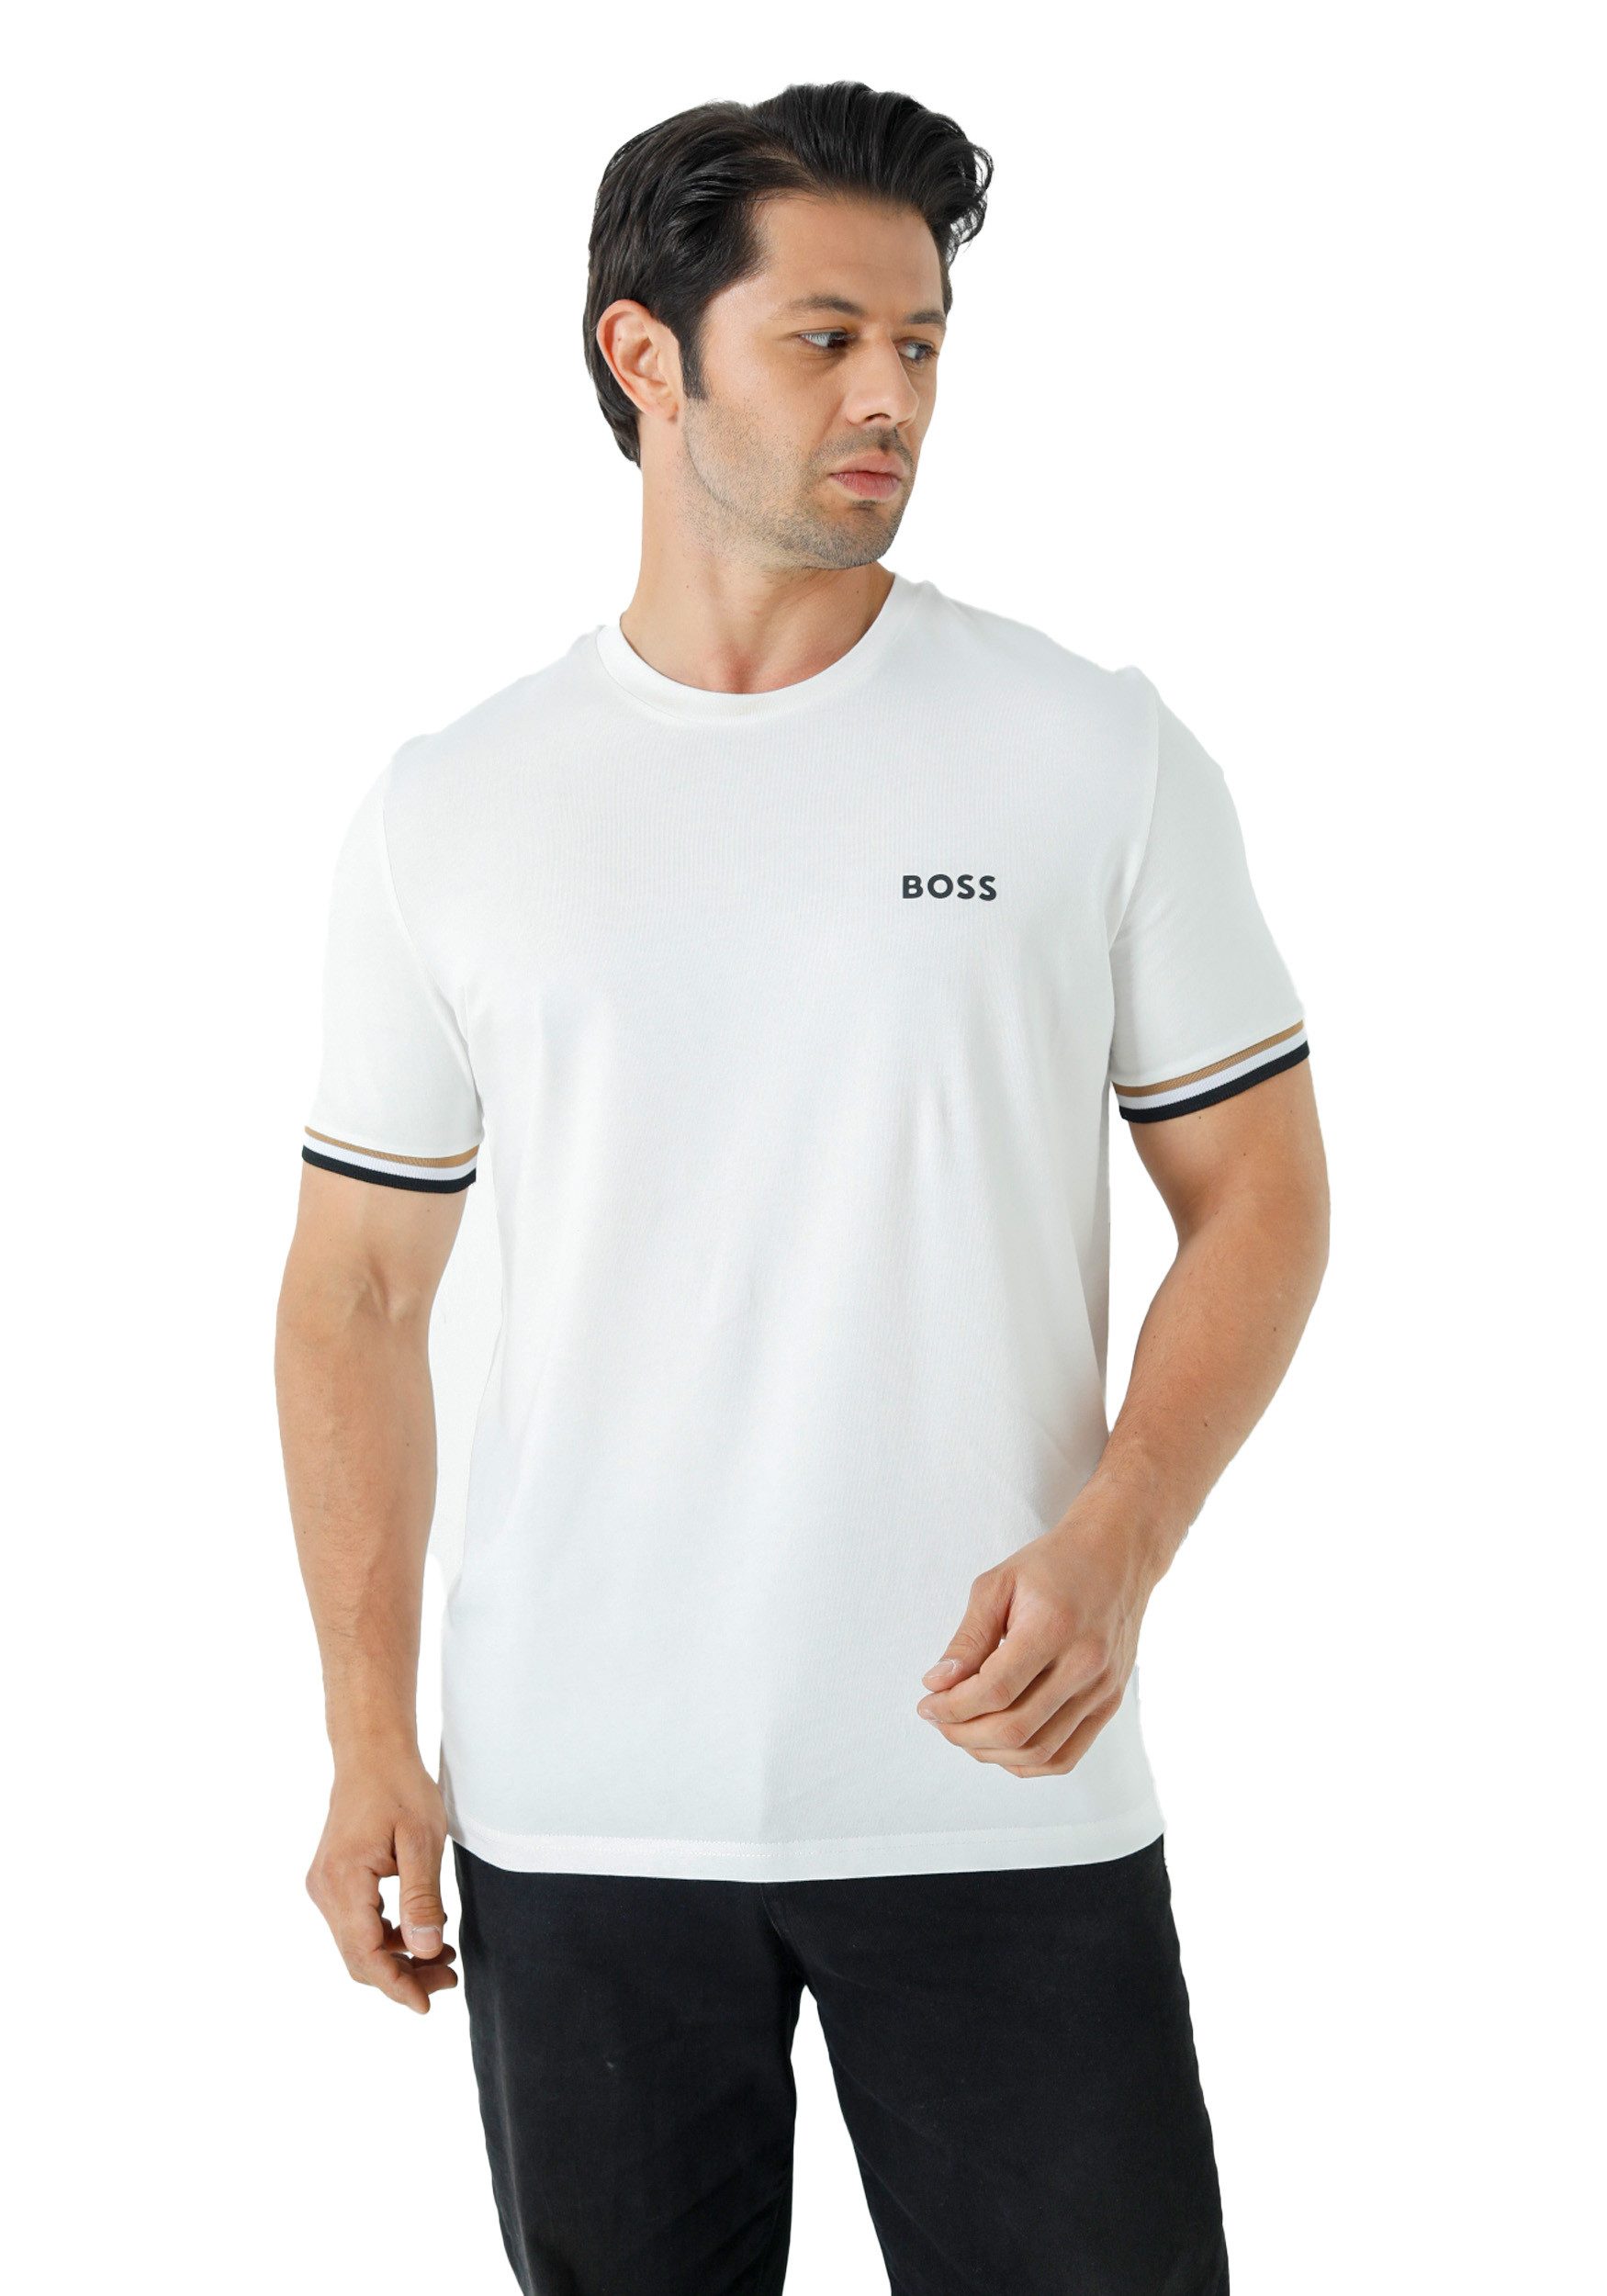 BOSS T-Shirt Hugo Boss Herren Shirt Kurzarm BOSS X MATTEO BERRETTINI mit waffelstruktur und signature-streifen-artwork